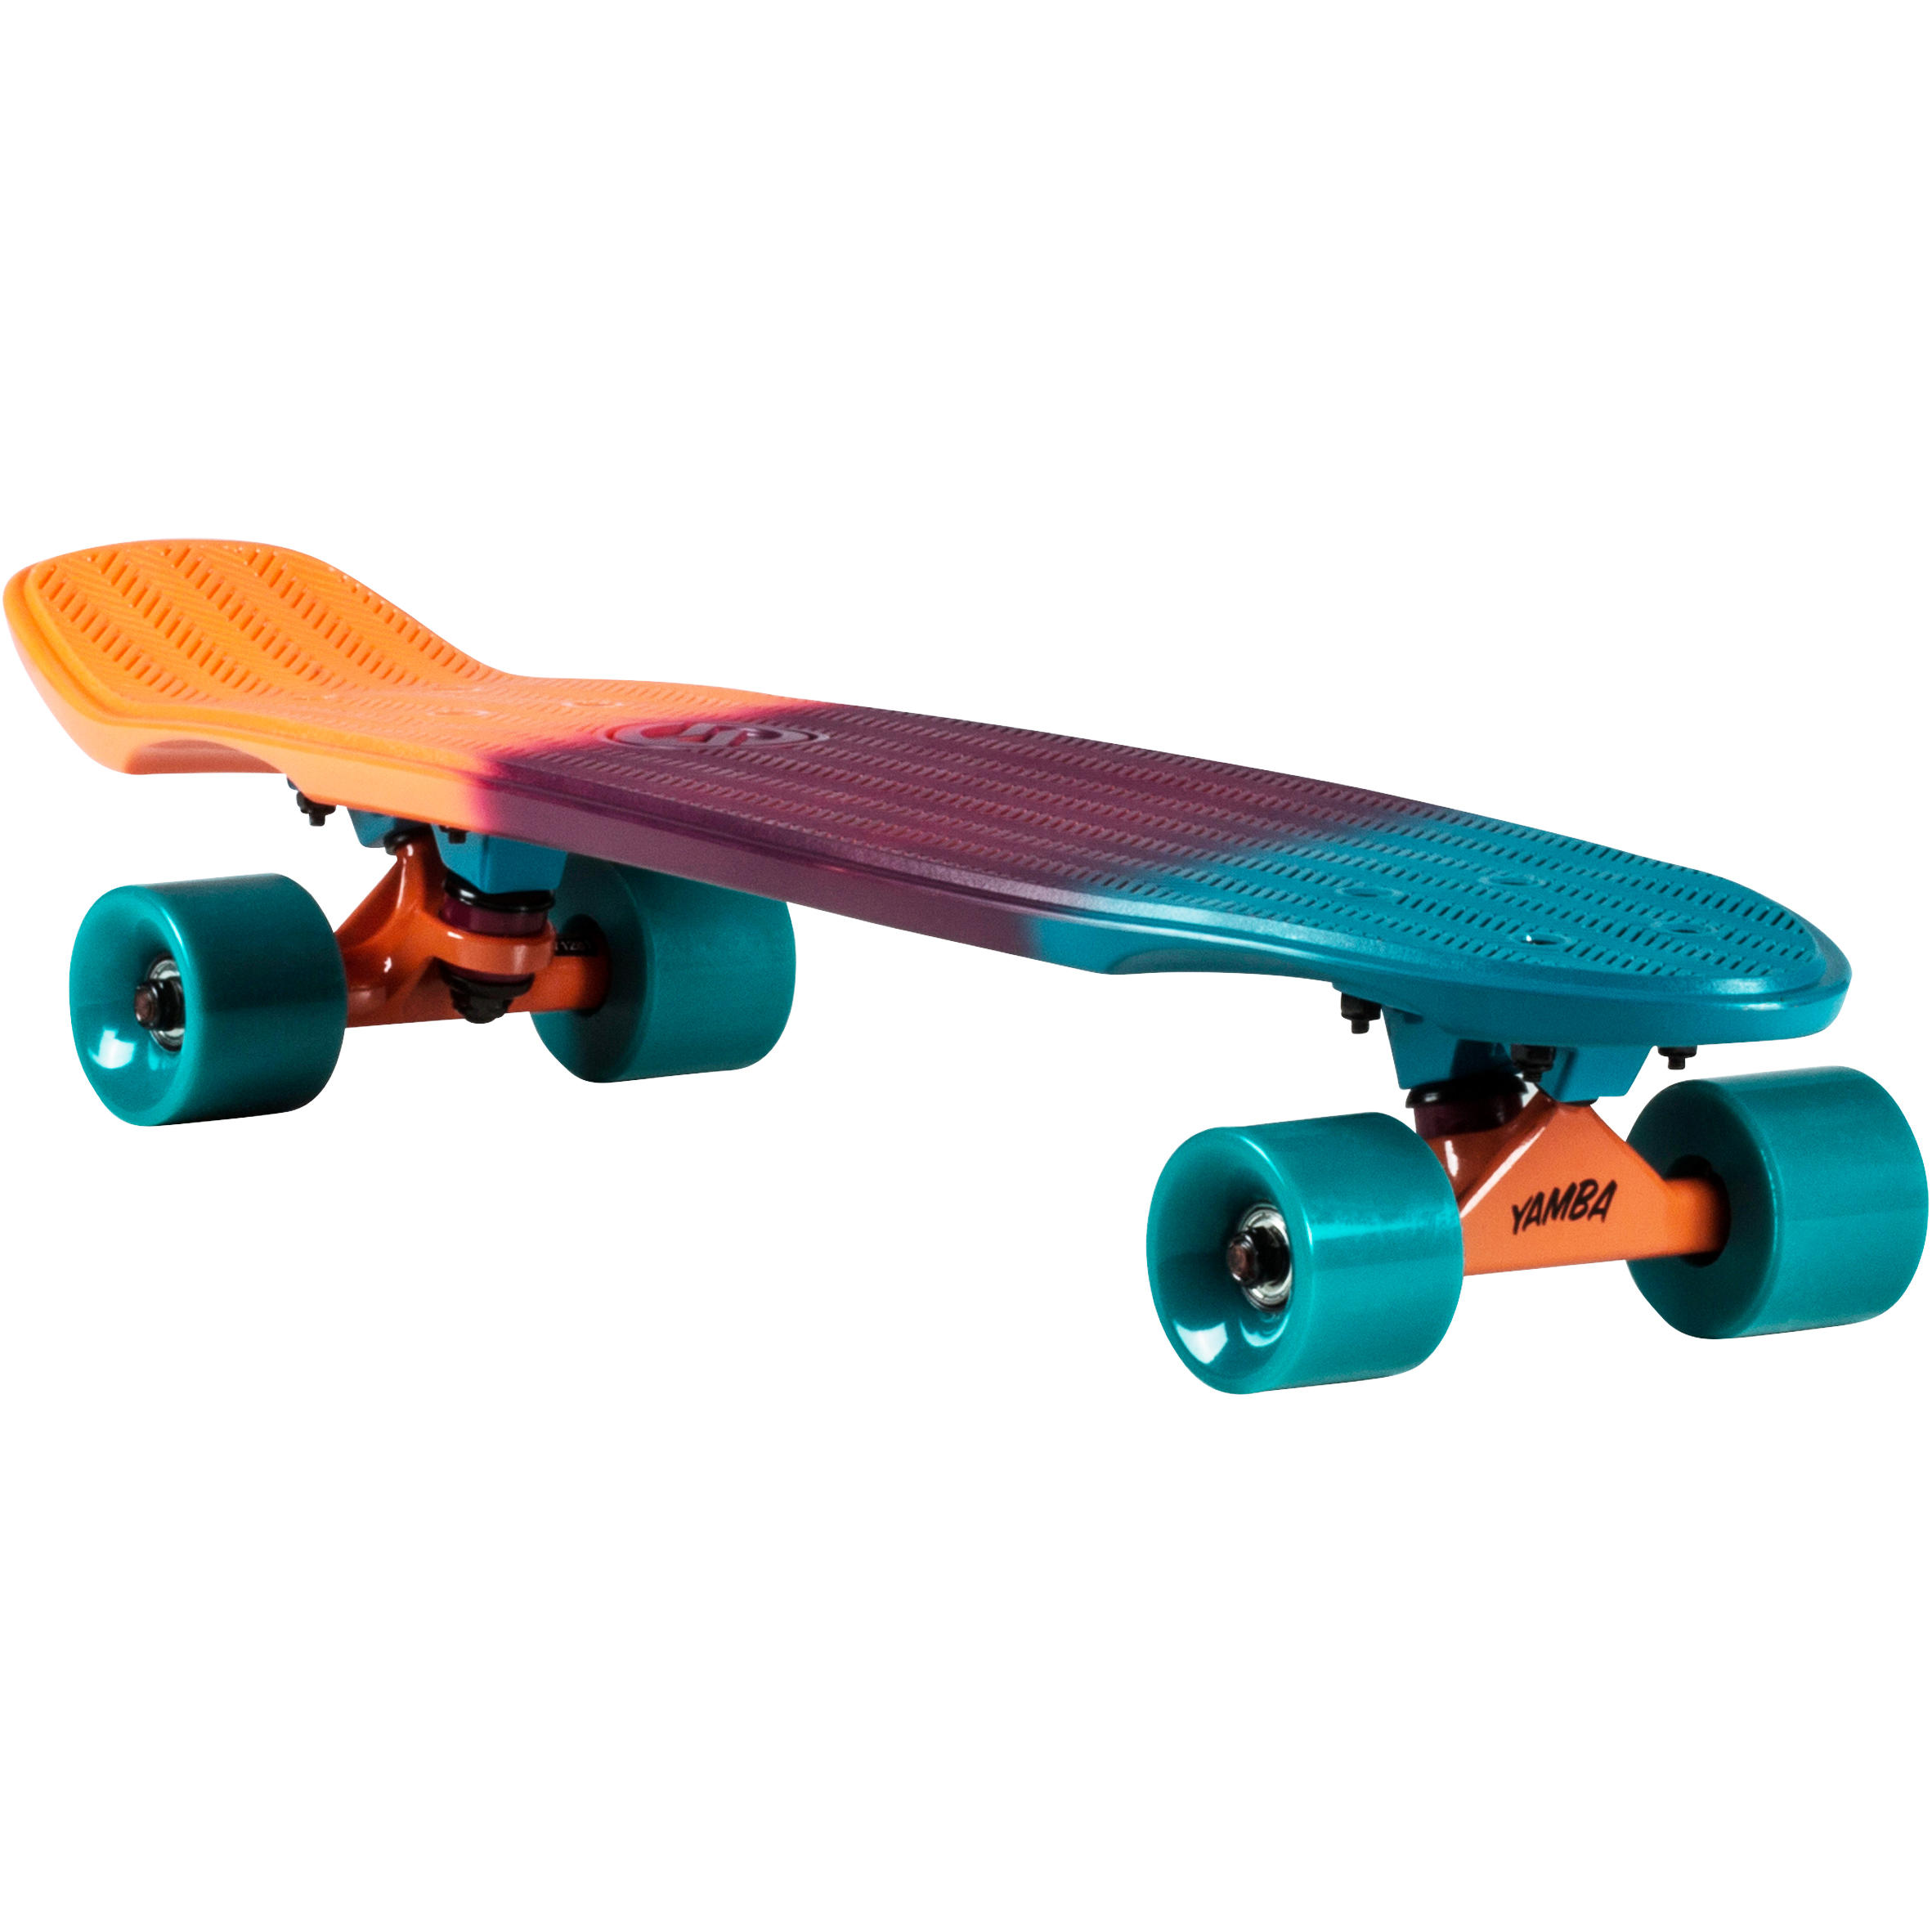 Big Yamba Cruiser Skateboard - Blue 